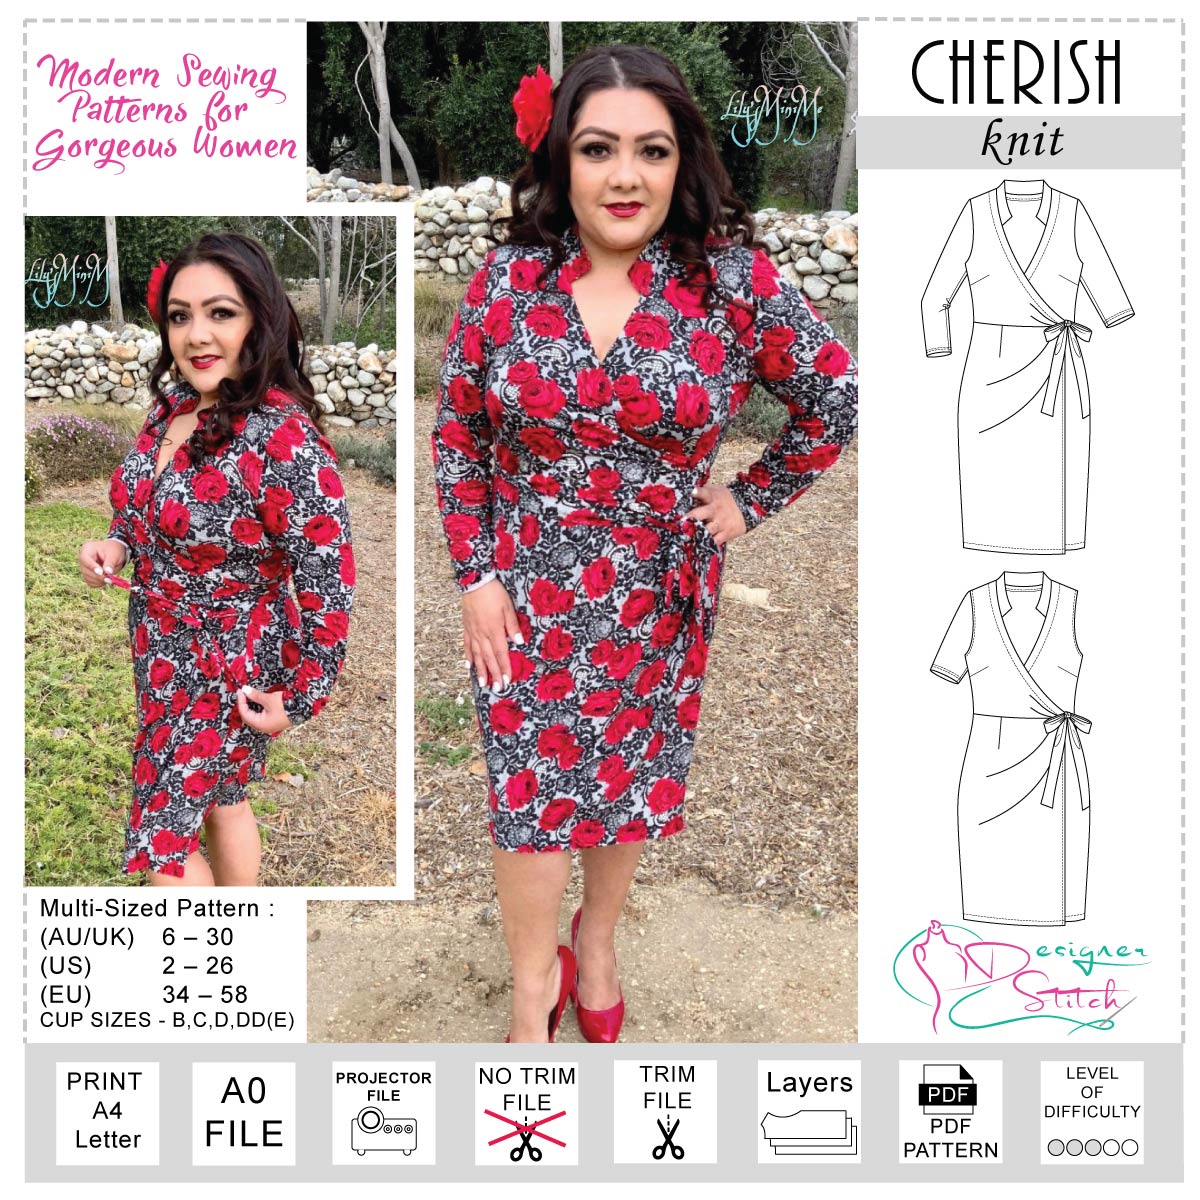 Cherish Wrap Dress Sewing Pattern (PDF) - Designer Stitch